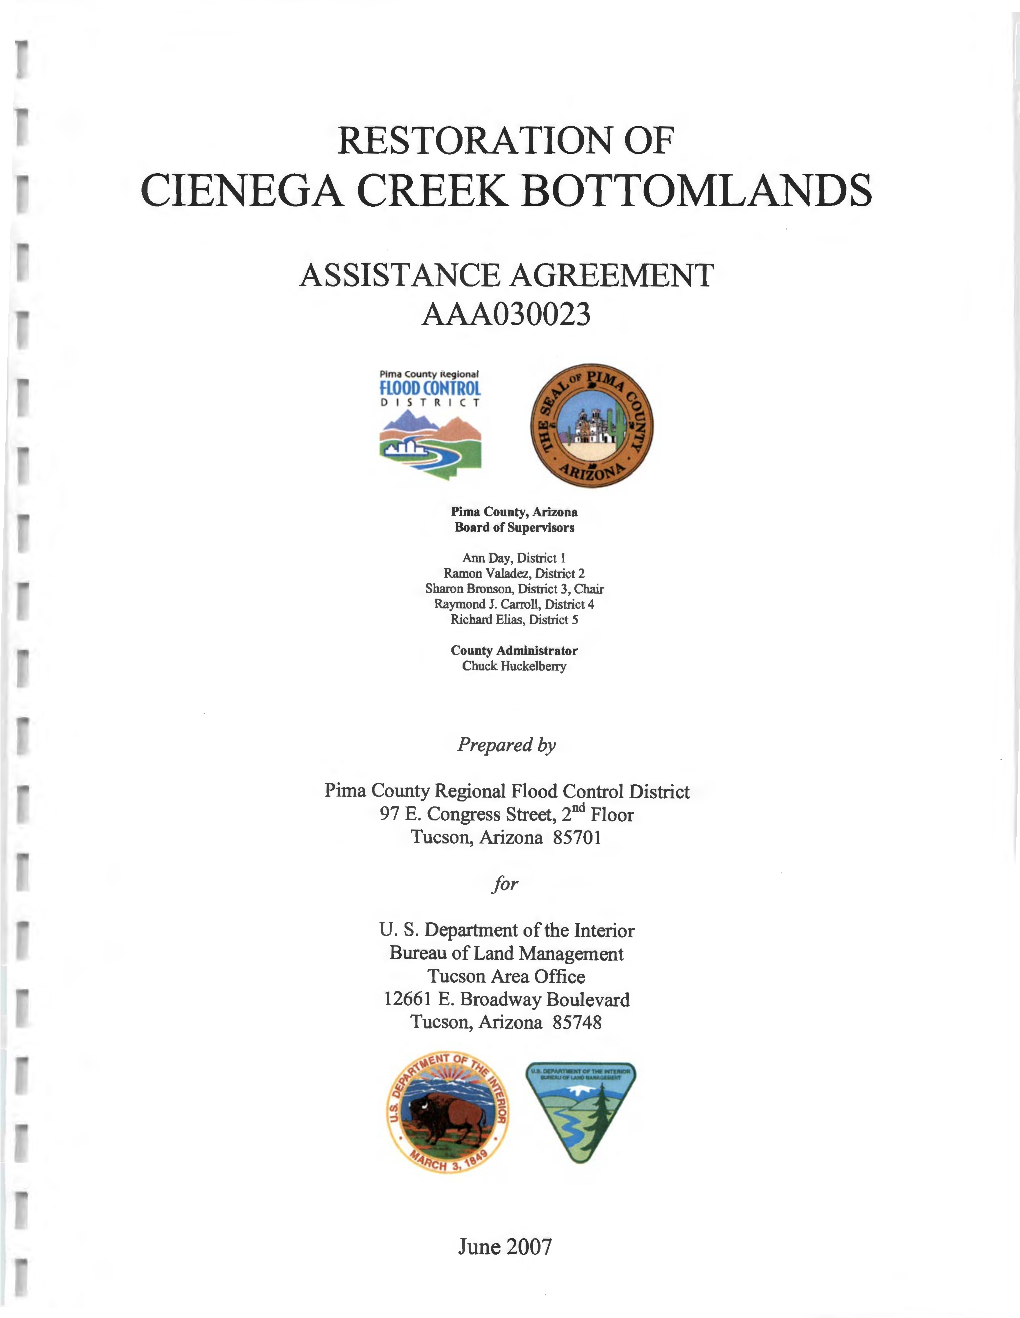 Cienega Creek Bottomlands